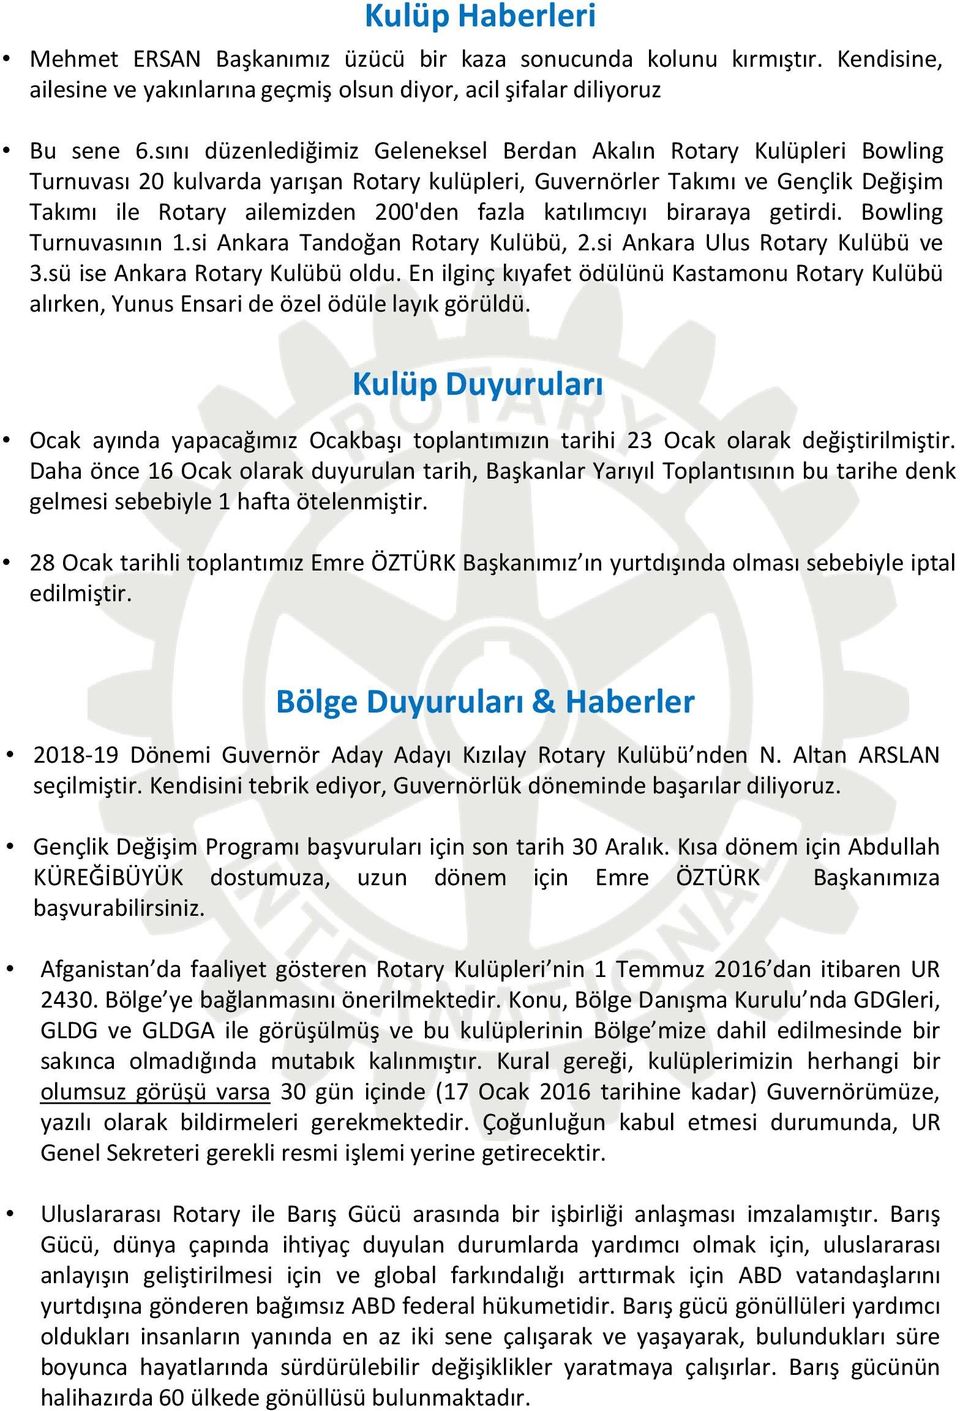 katılımcıyı biraraya getirdi. Bowling Turnuvasının 1.si Ankara Tandoğan Rotary Kulübü, 2.si Ankara Ulus Rotary Kulübü ve 3.sü ise Ankara Rotary Kulübü oldu.